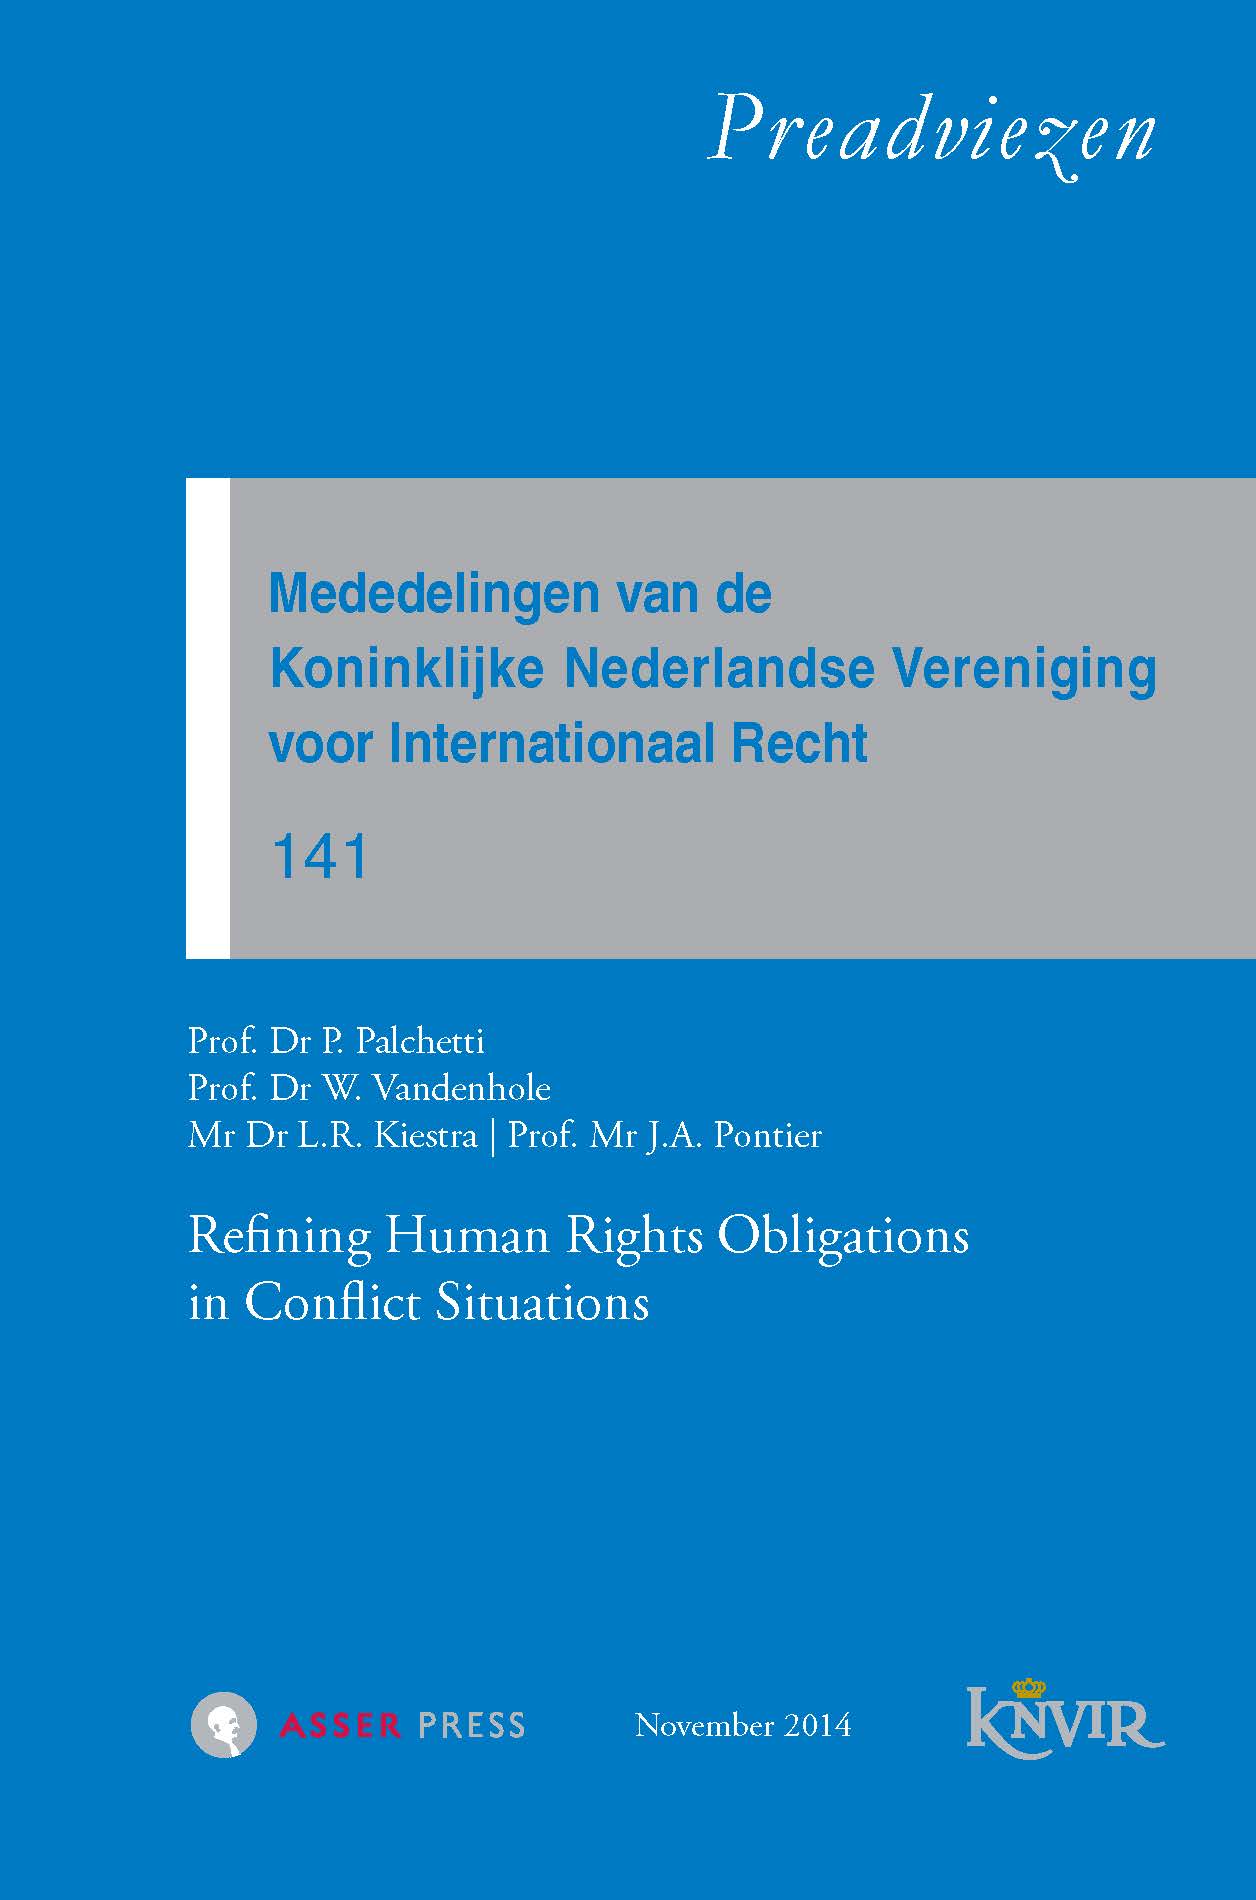 Mededelingen van de Koninklijke Nederlandse Vereniging voor Internationaal Recht – Nr. 141 – Refining Human Rights Obligations in Conflict Situations